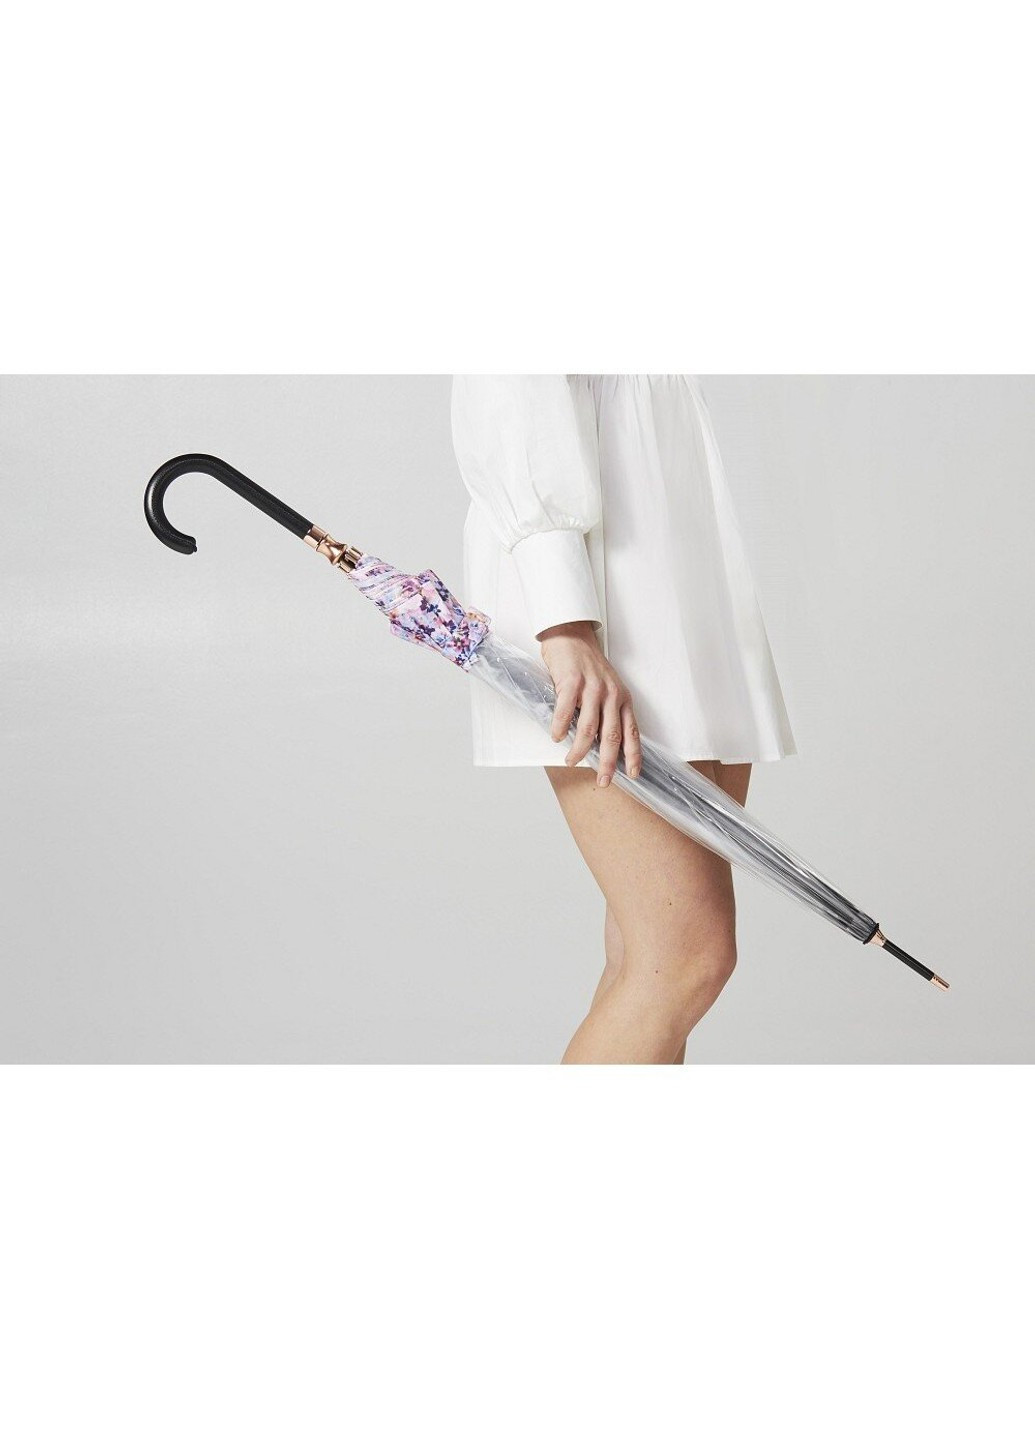 Жіноча механічна парасолька-тростина L866 Birdcage-2 Luxe Digital Blossom (Квітка) Fulton (262449464)